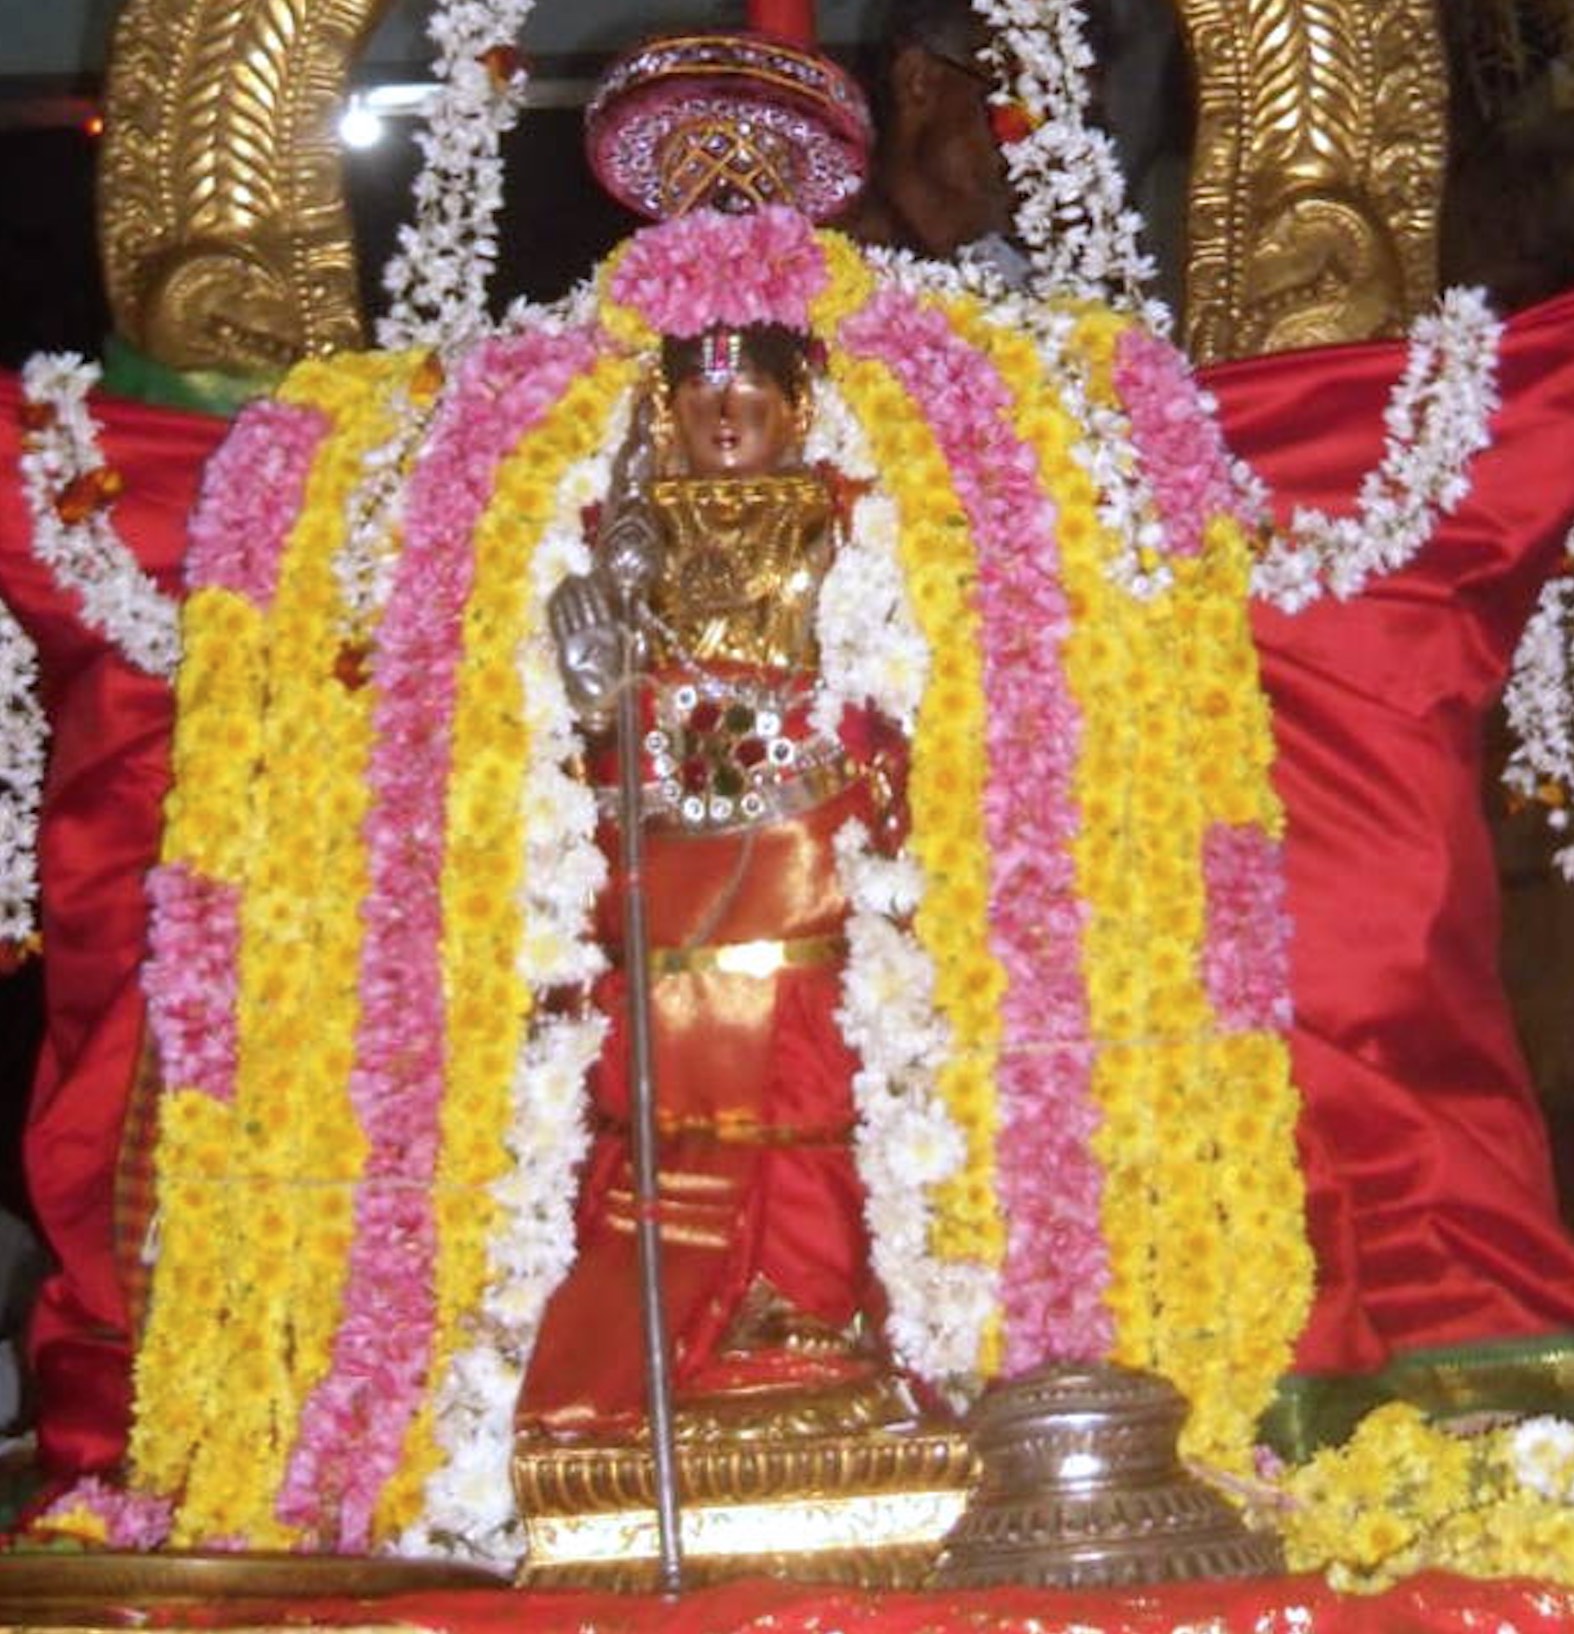 Thirukannamangai Thirukarthikai Utsavam